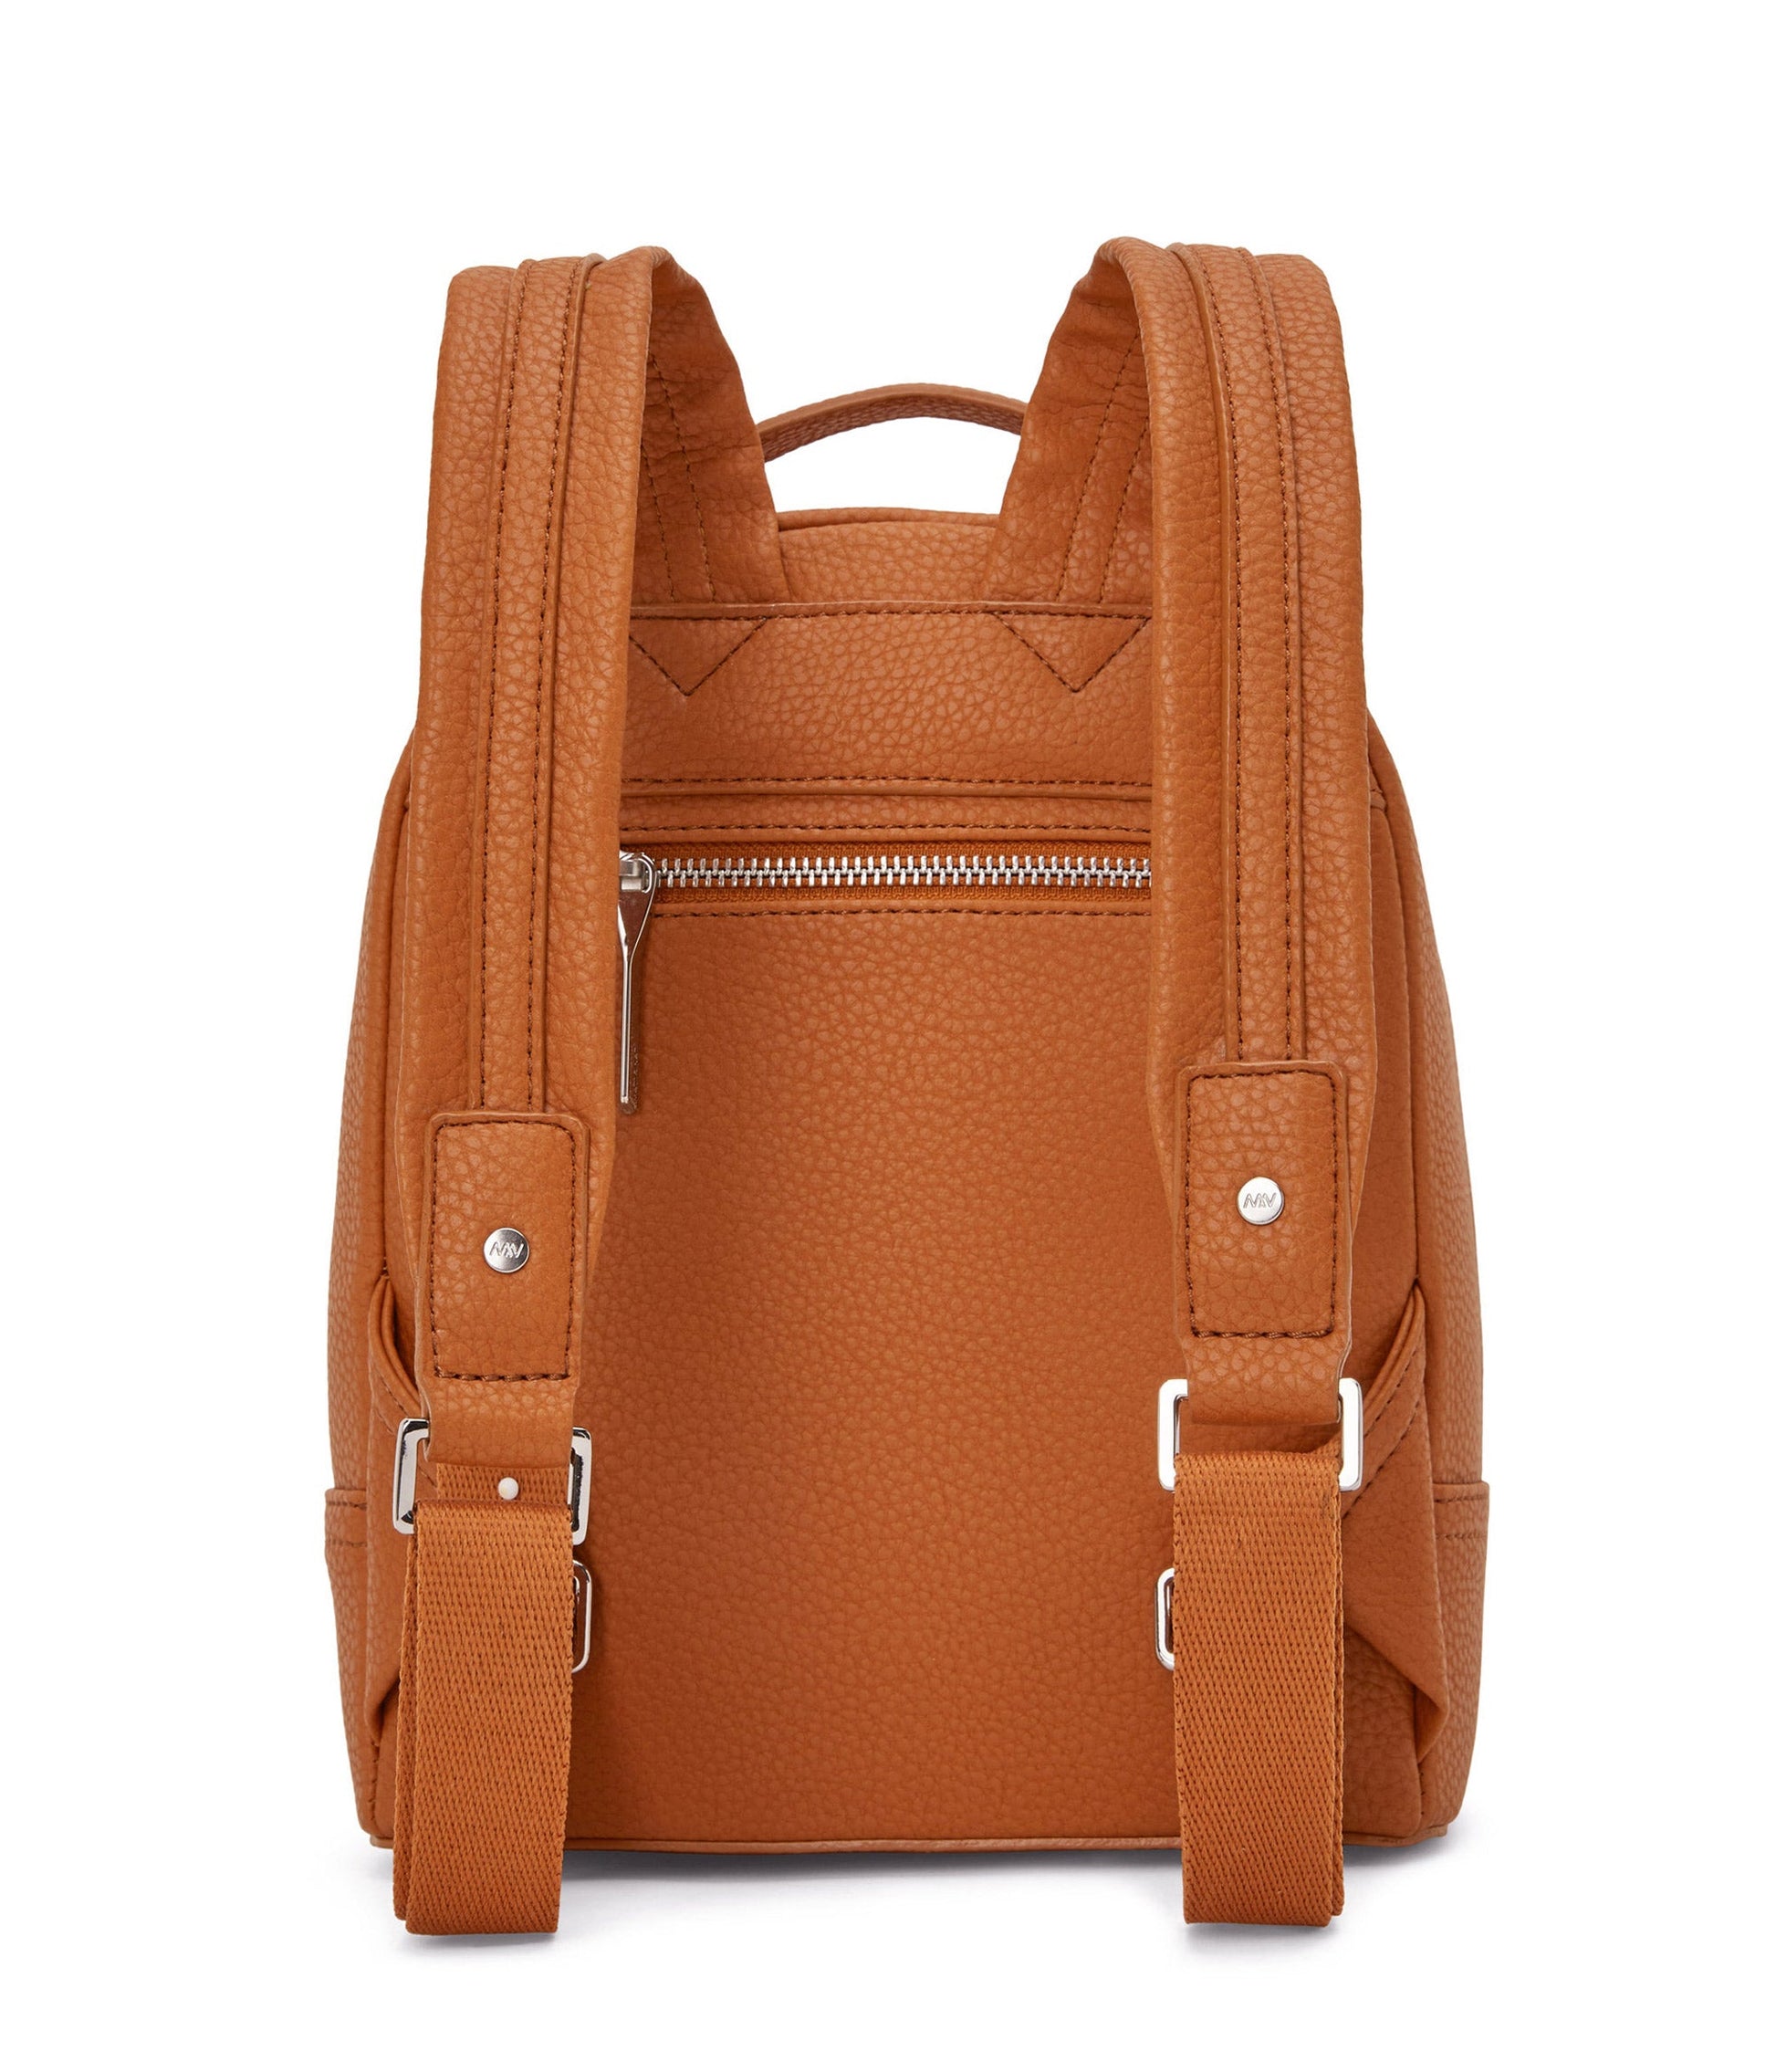 OLLY Vegan Backpack - Purity | Color: Orange - variant::prairie